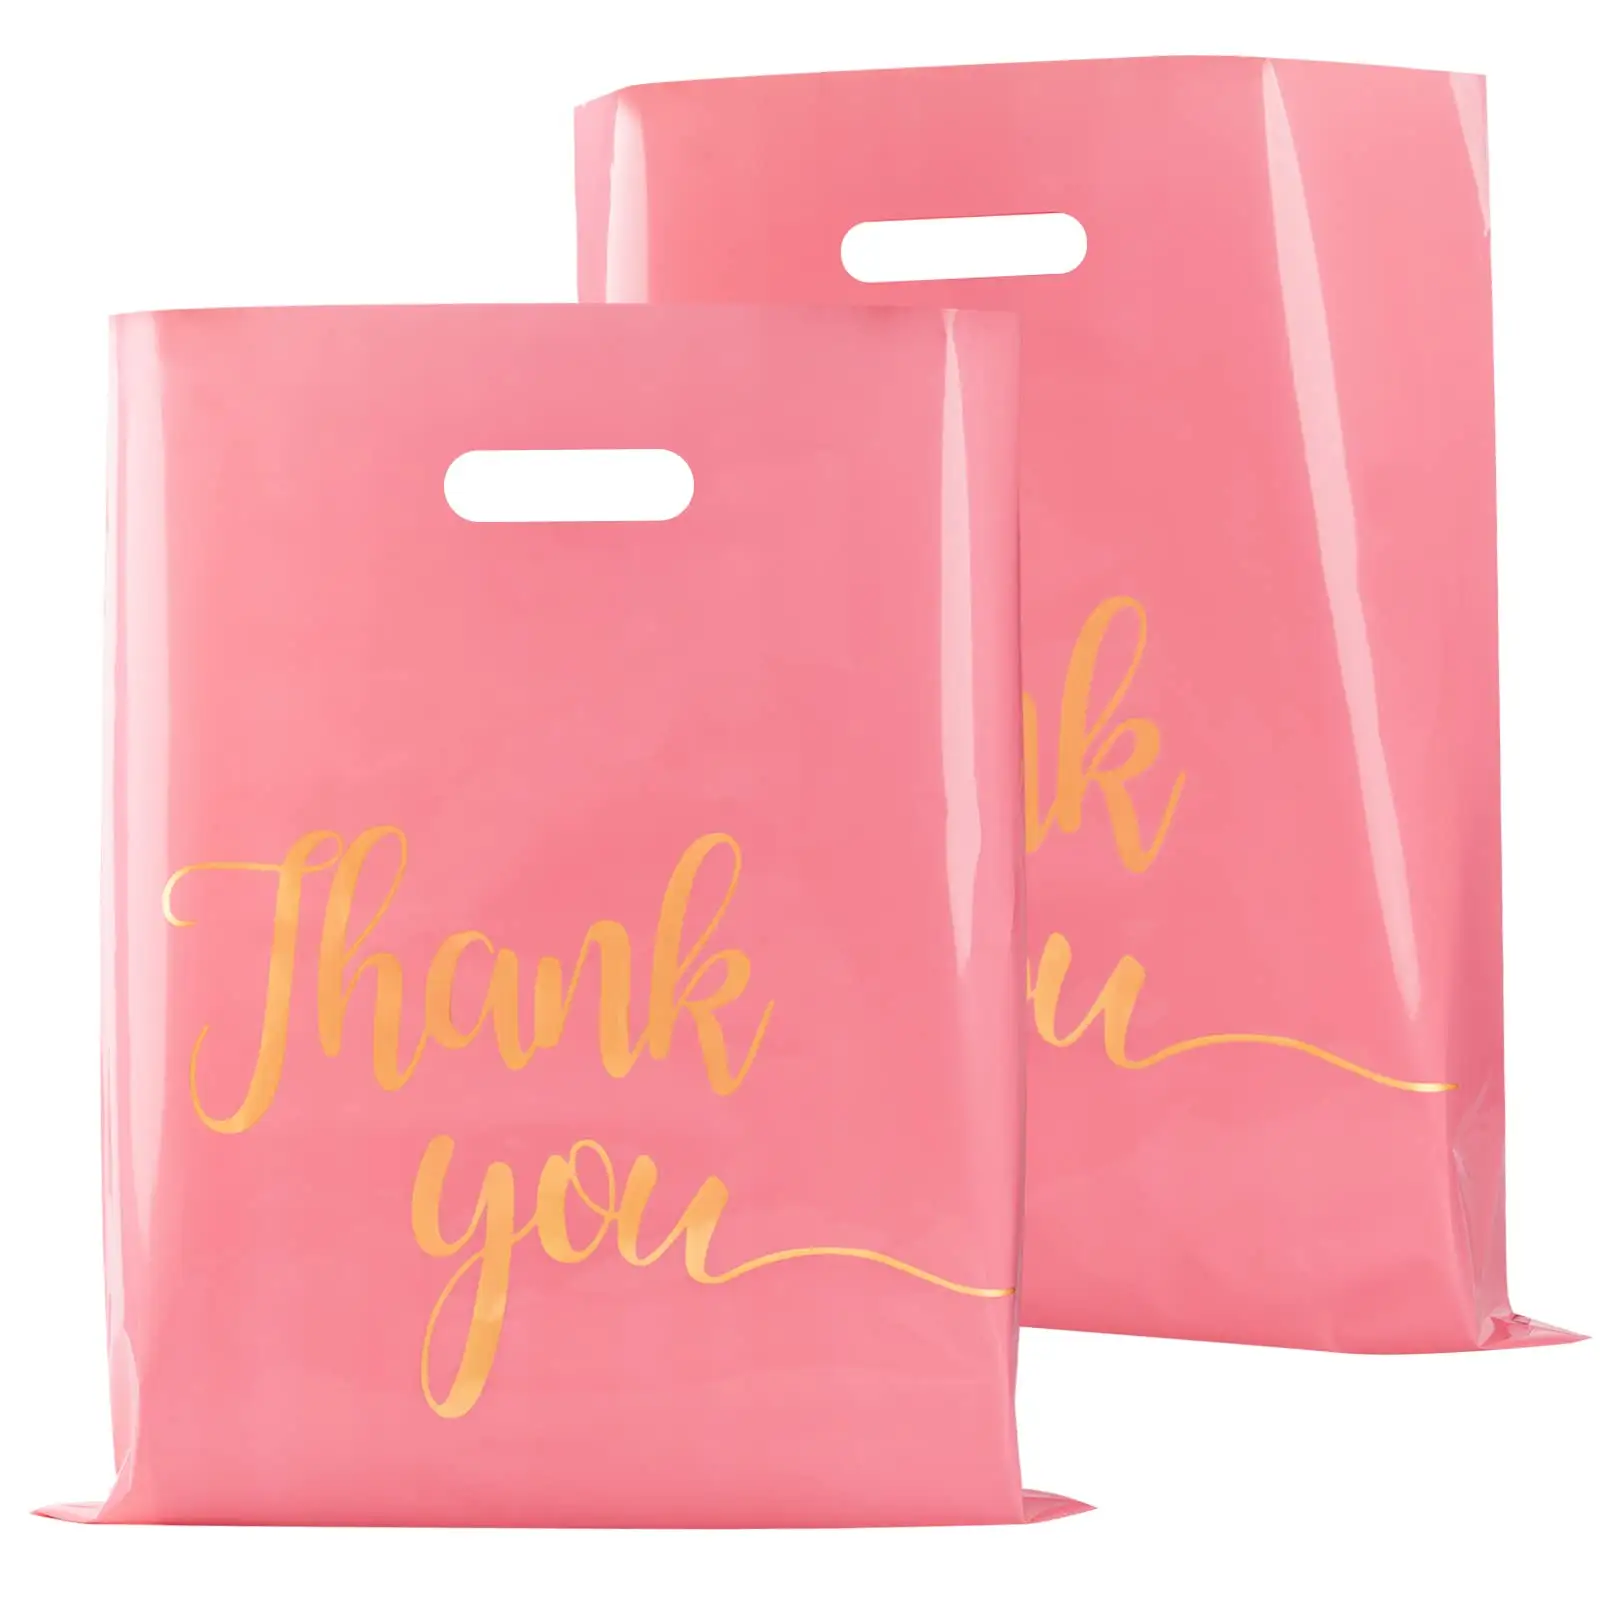 Dankeschön-Waren-Taschen extra dicke wiederverwendbare Kunststoff-Einkaufstaschen im Einzelhandel mit Griff für Geschenke, Geschäfte